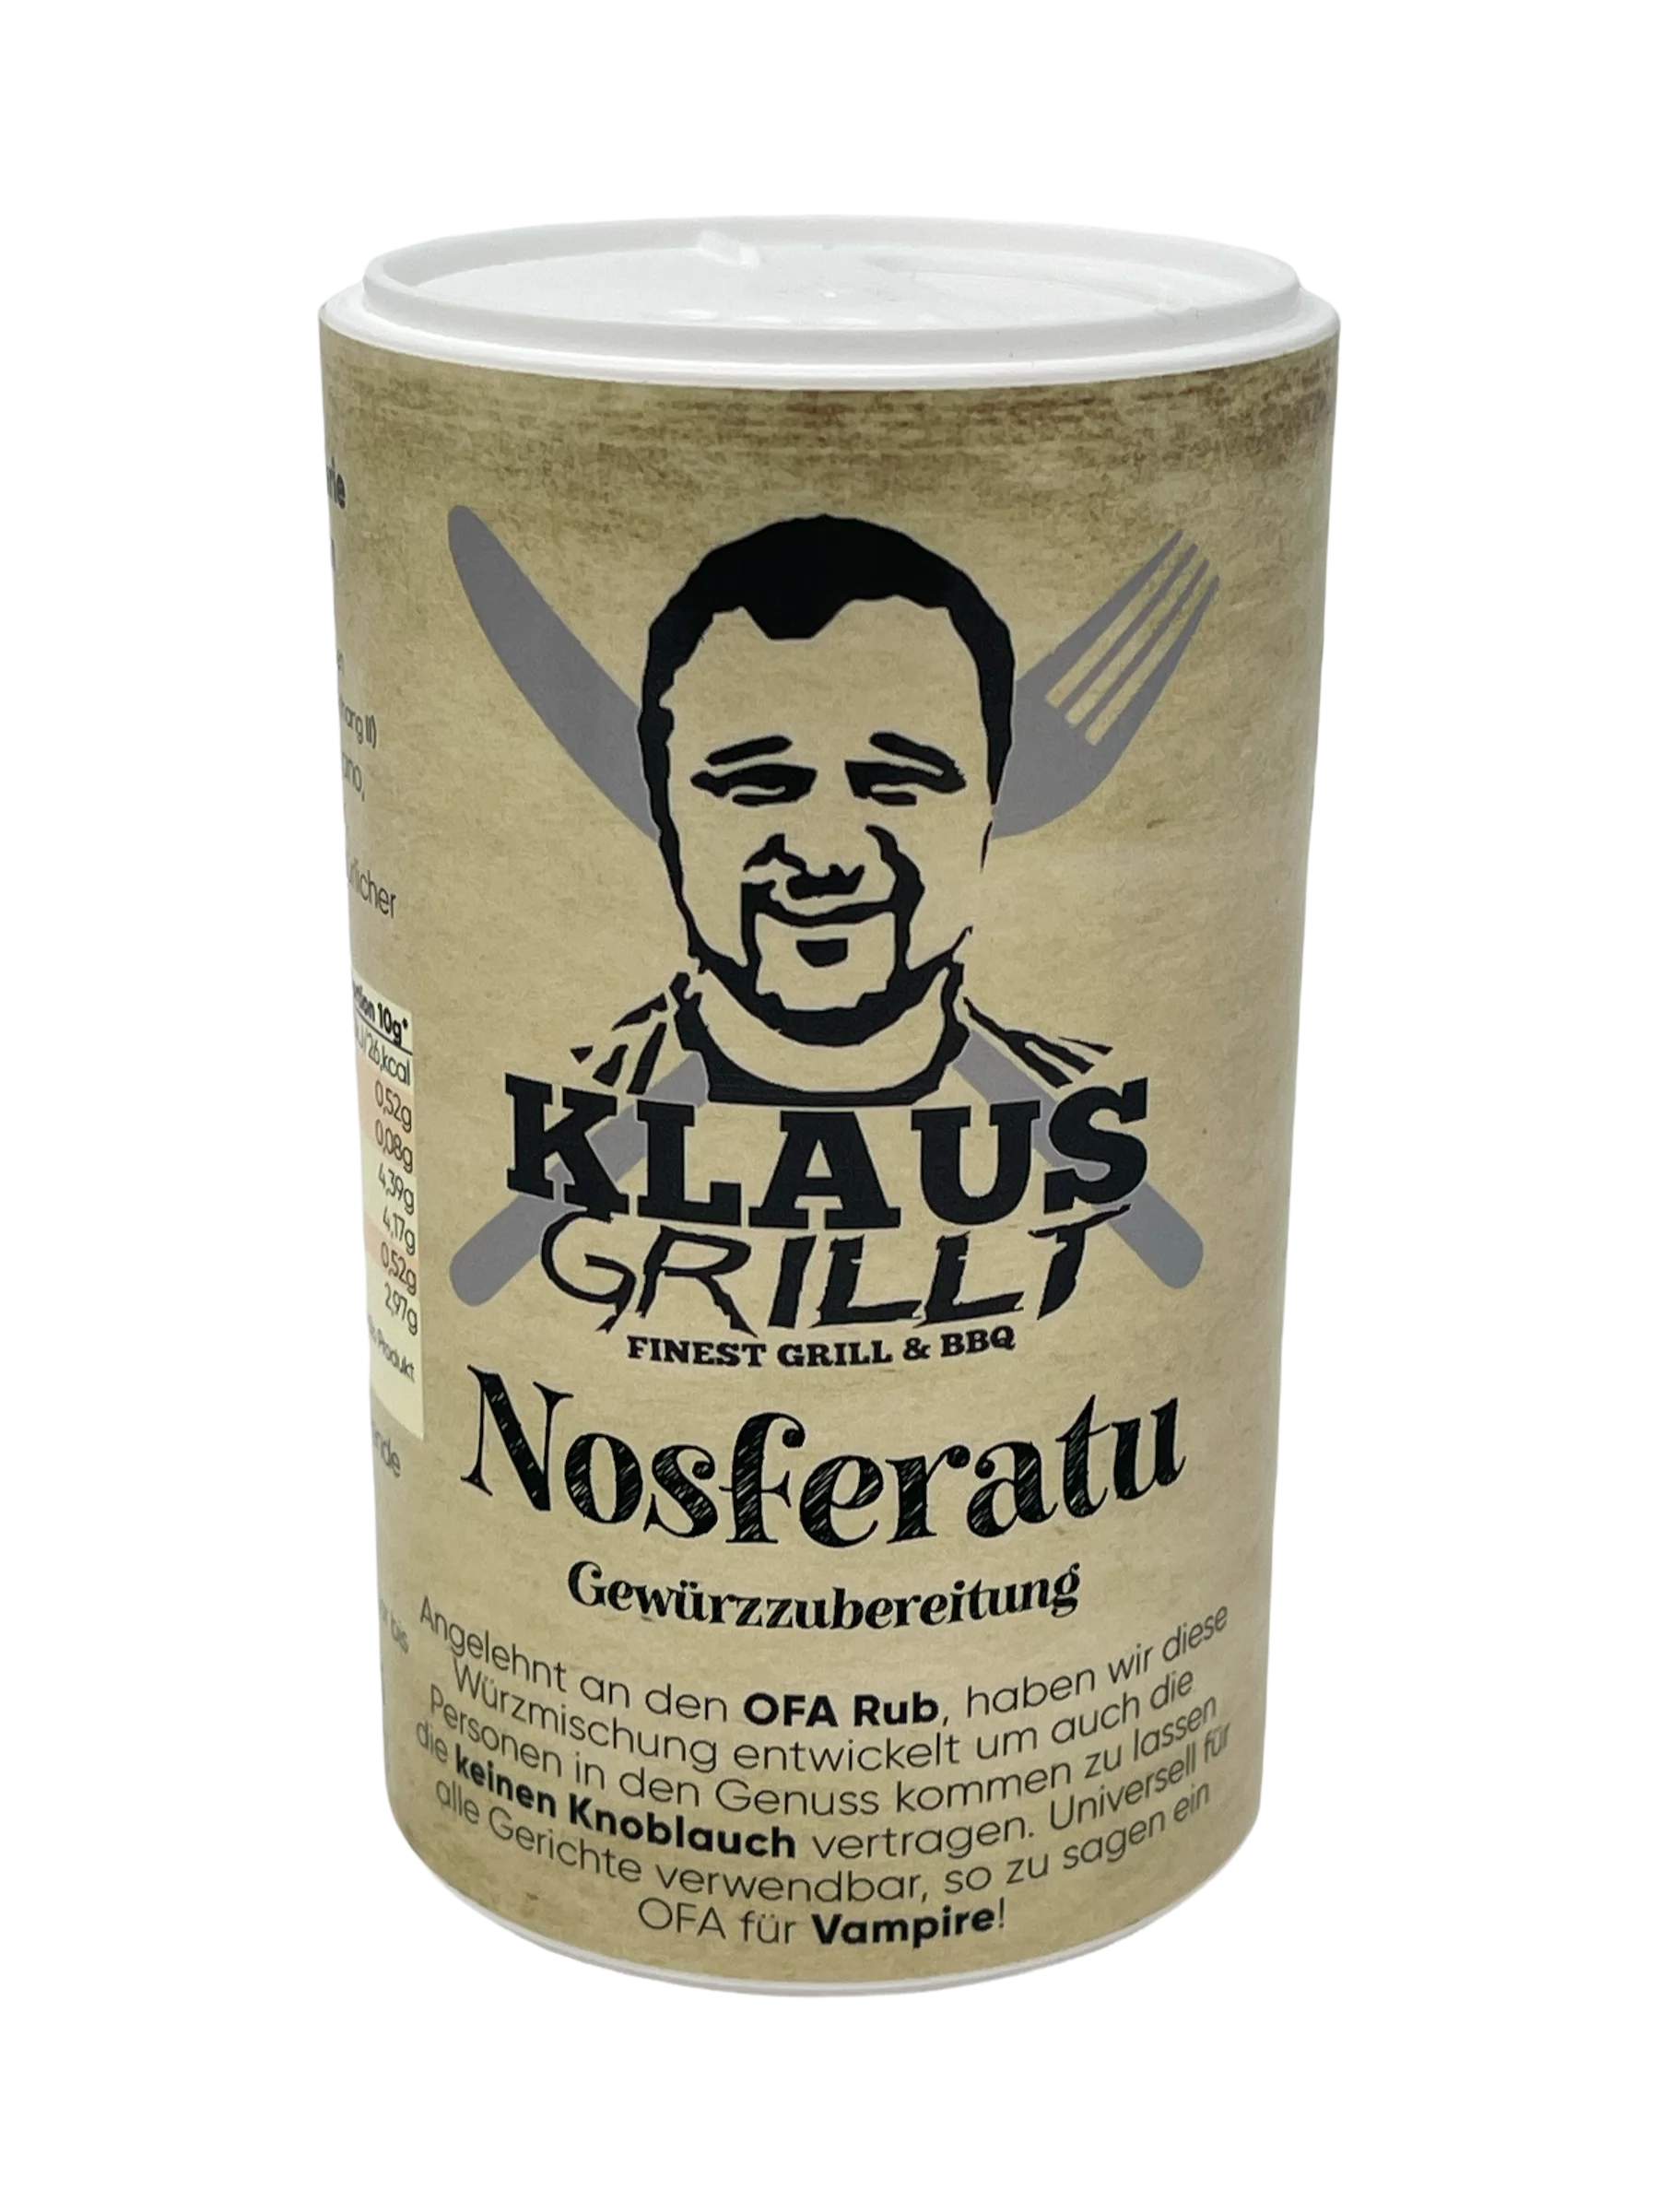 Klaus grillt, Nosferatu, 100g Streuer